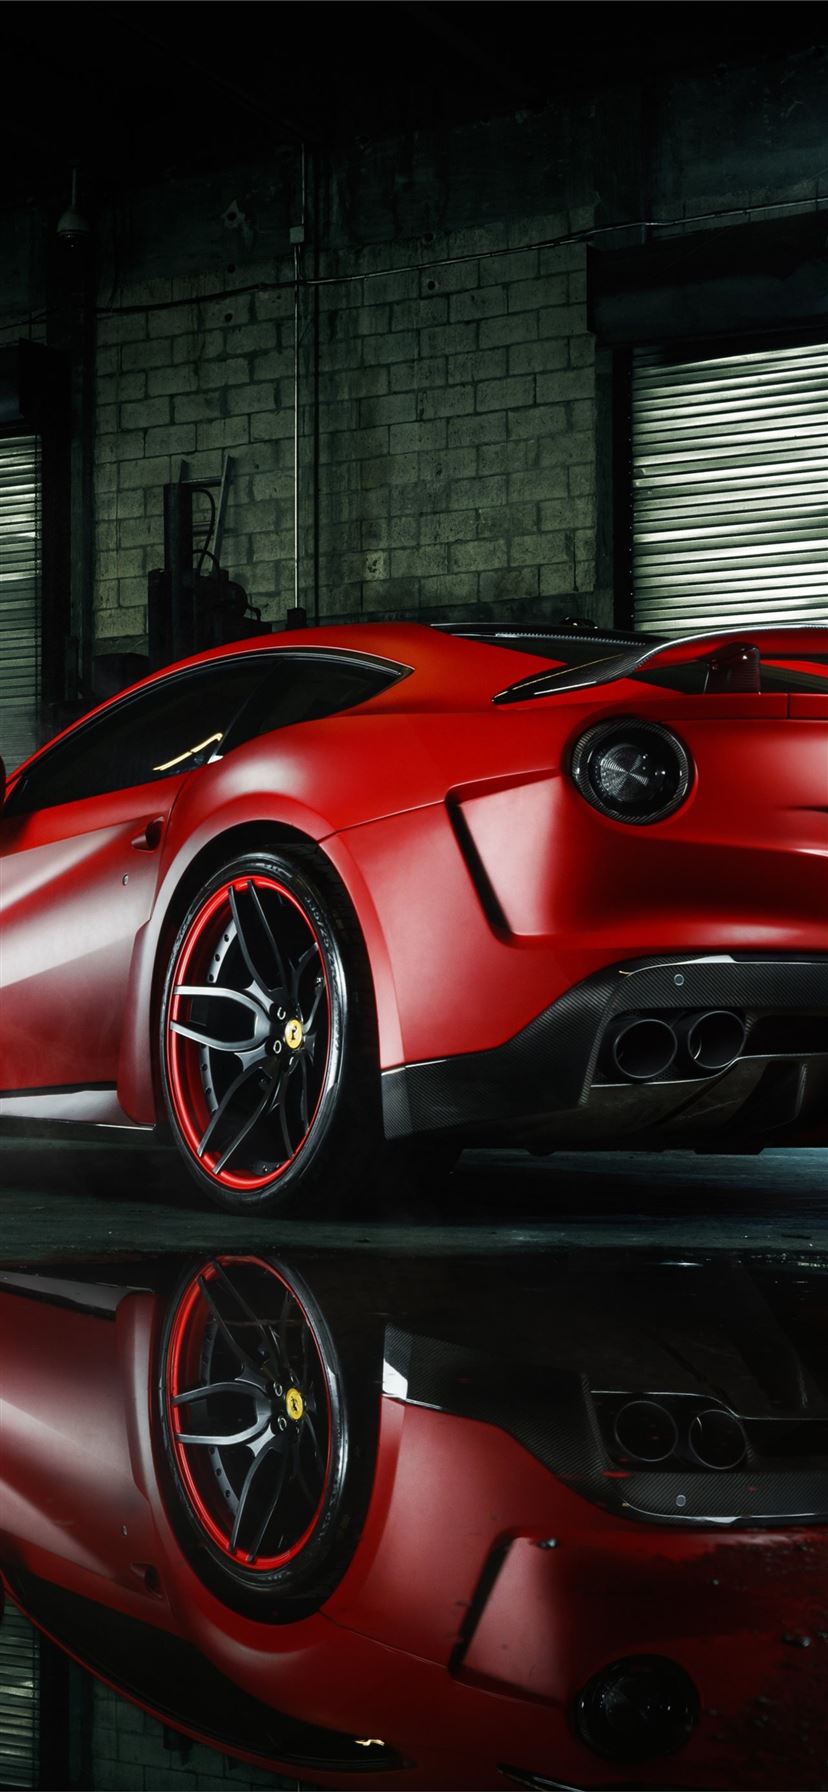 Muốn tìm một hình nền độc đáo và đẹp mắt cho chiếc iPhone của mình? Hãy thử với bộ sưu tập hình nền chiếc siêu xe Ferrari 458 để tạo điểm nhấn cho màn hình của bạn.